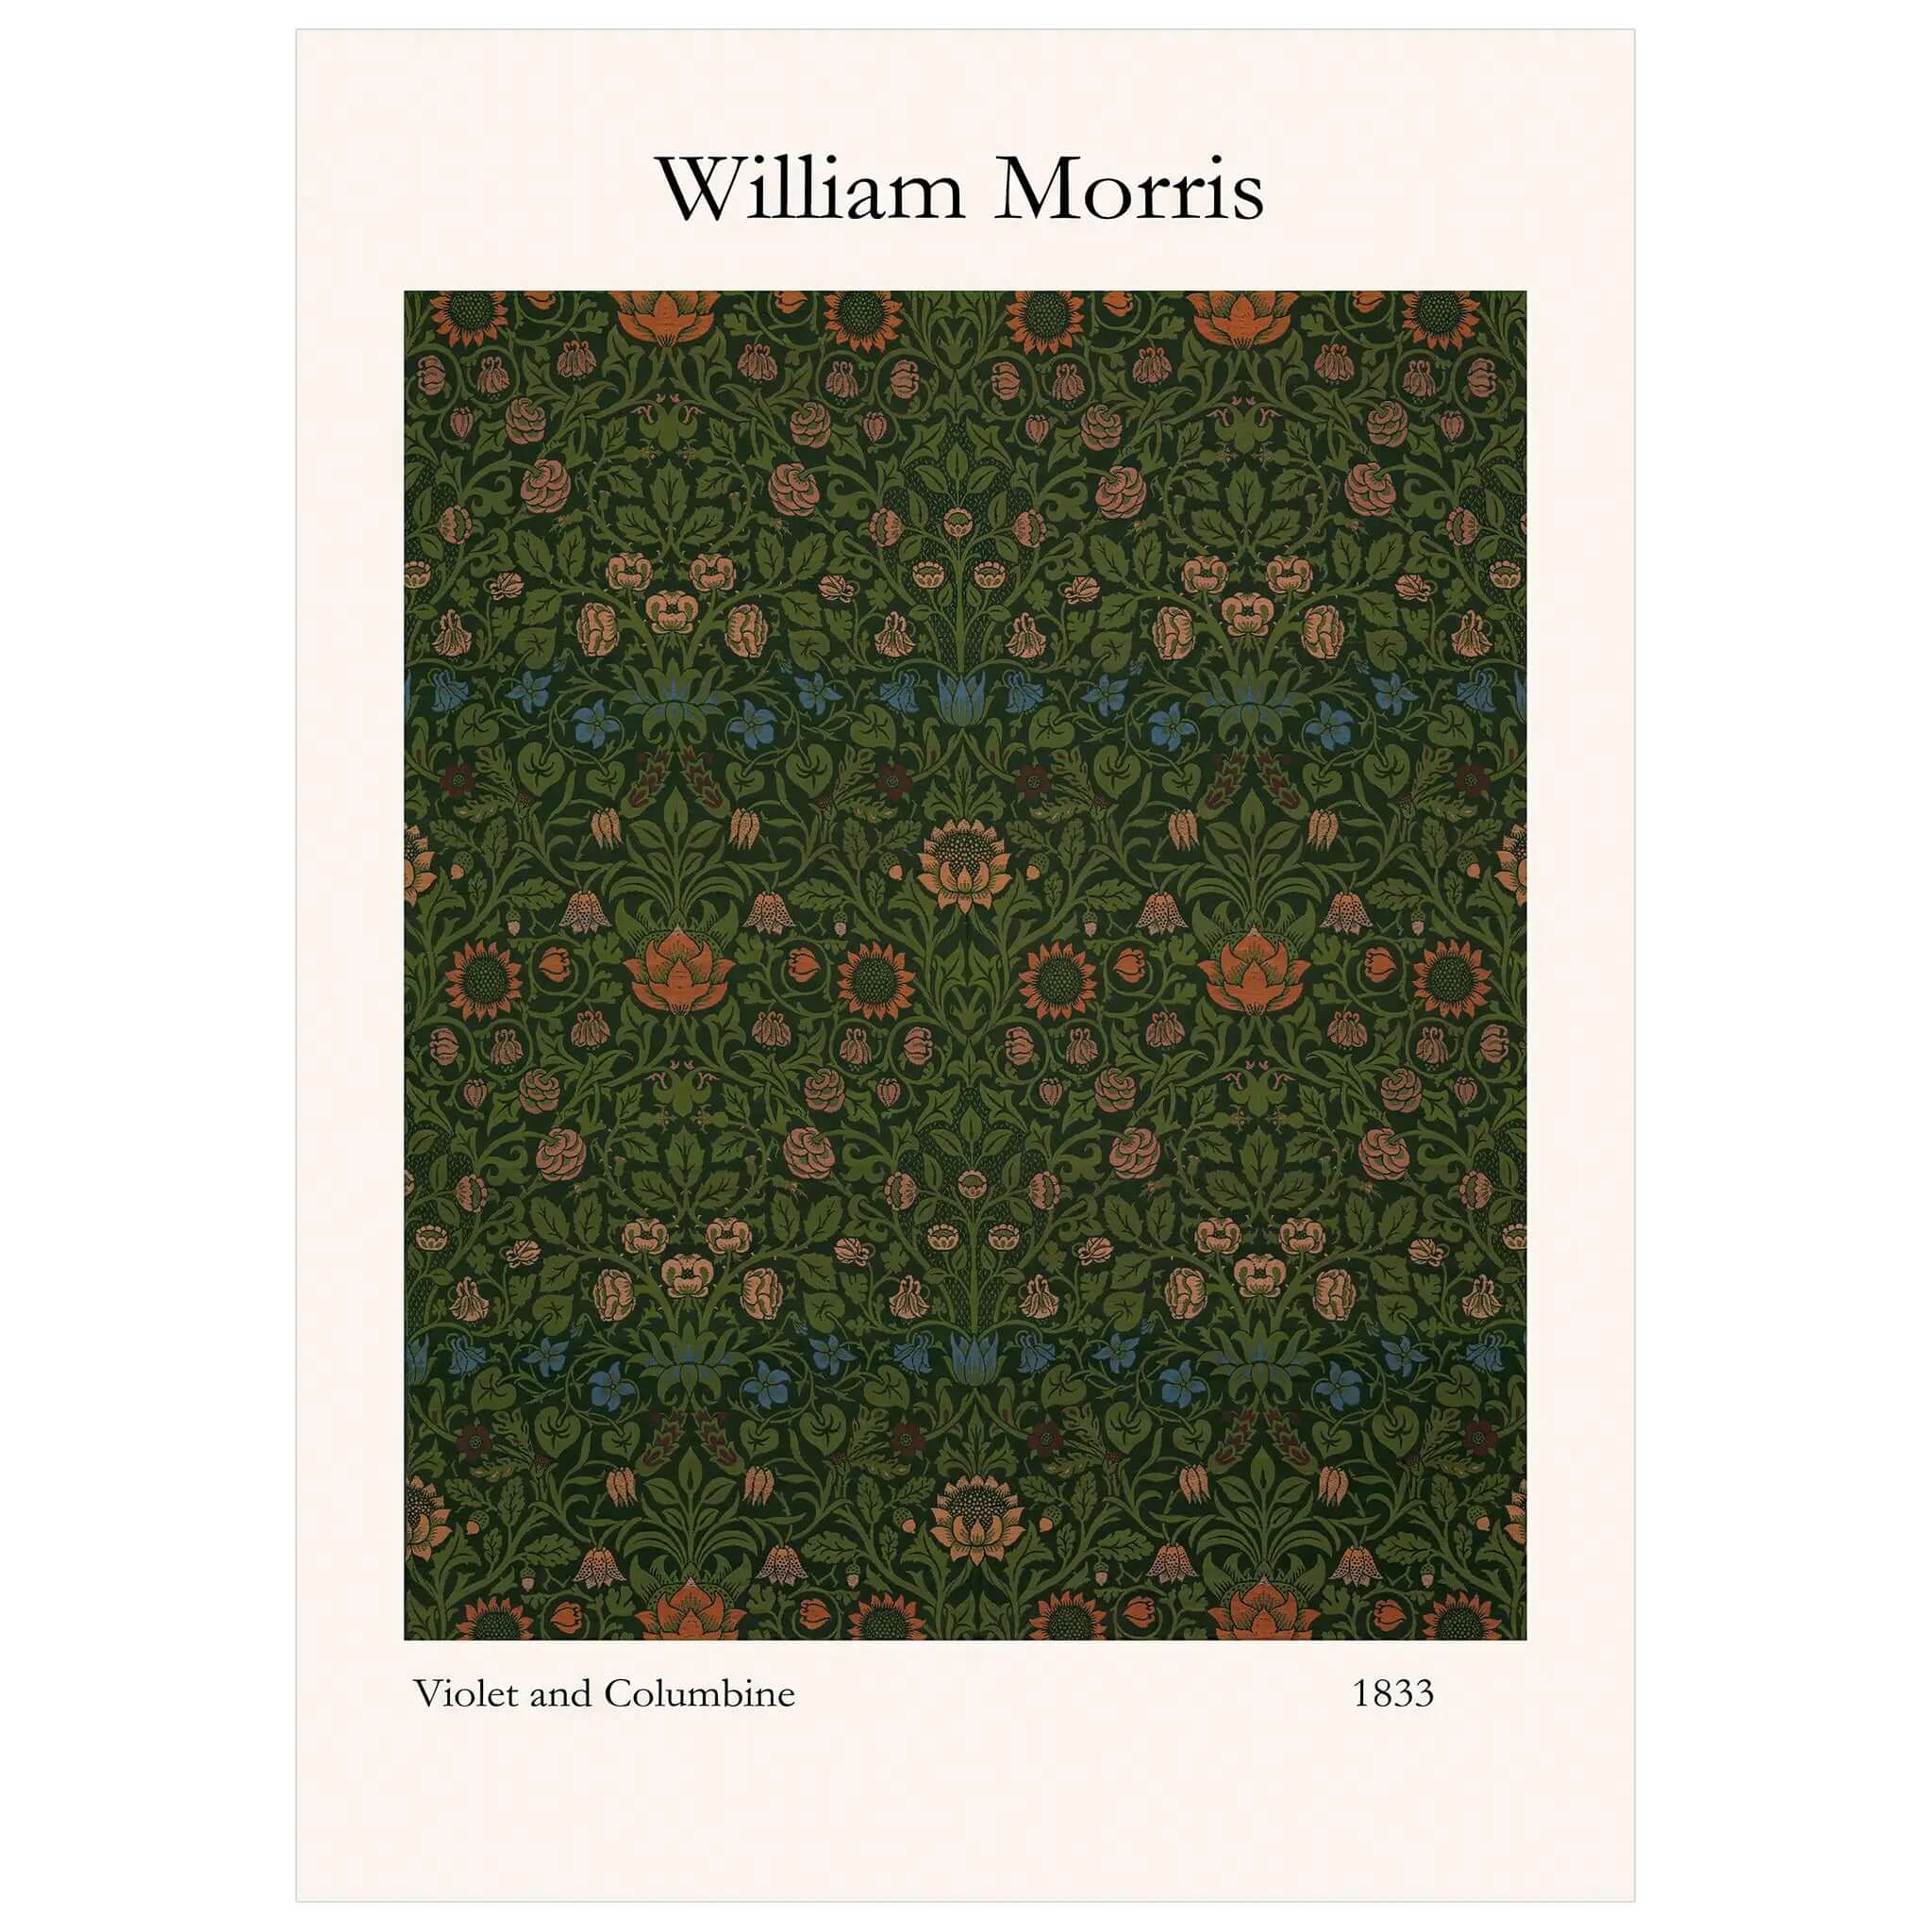 William Morris Viloet and Columbine